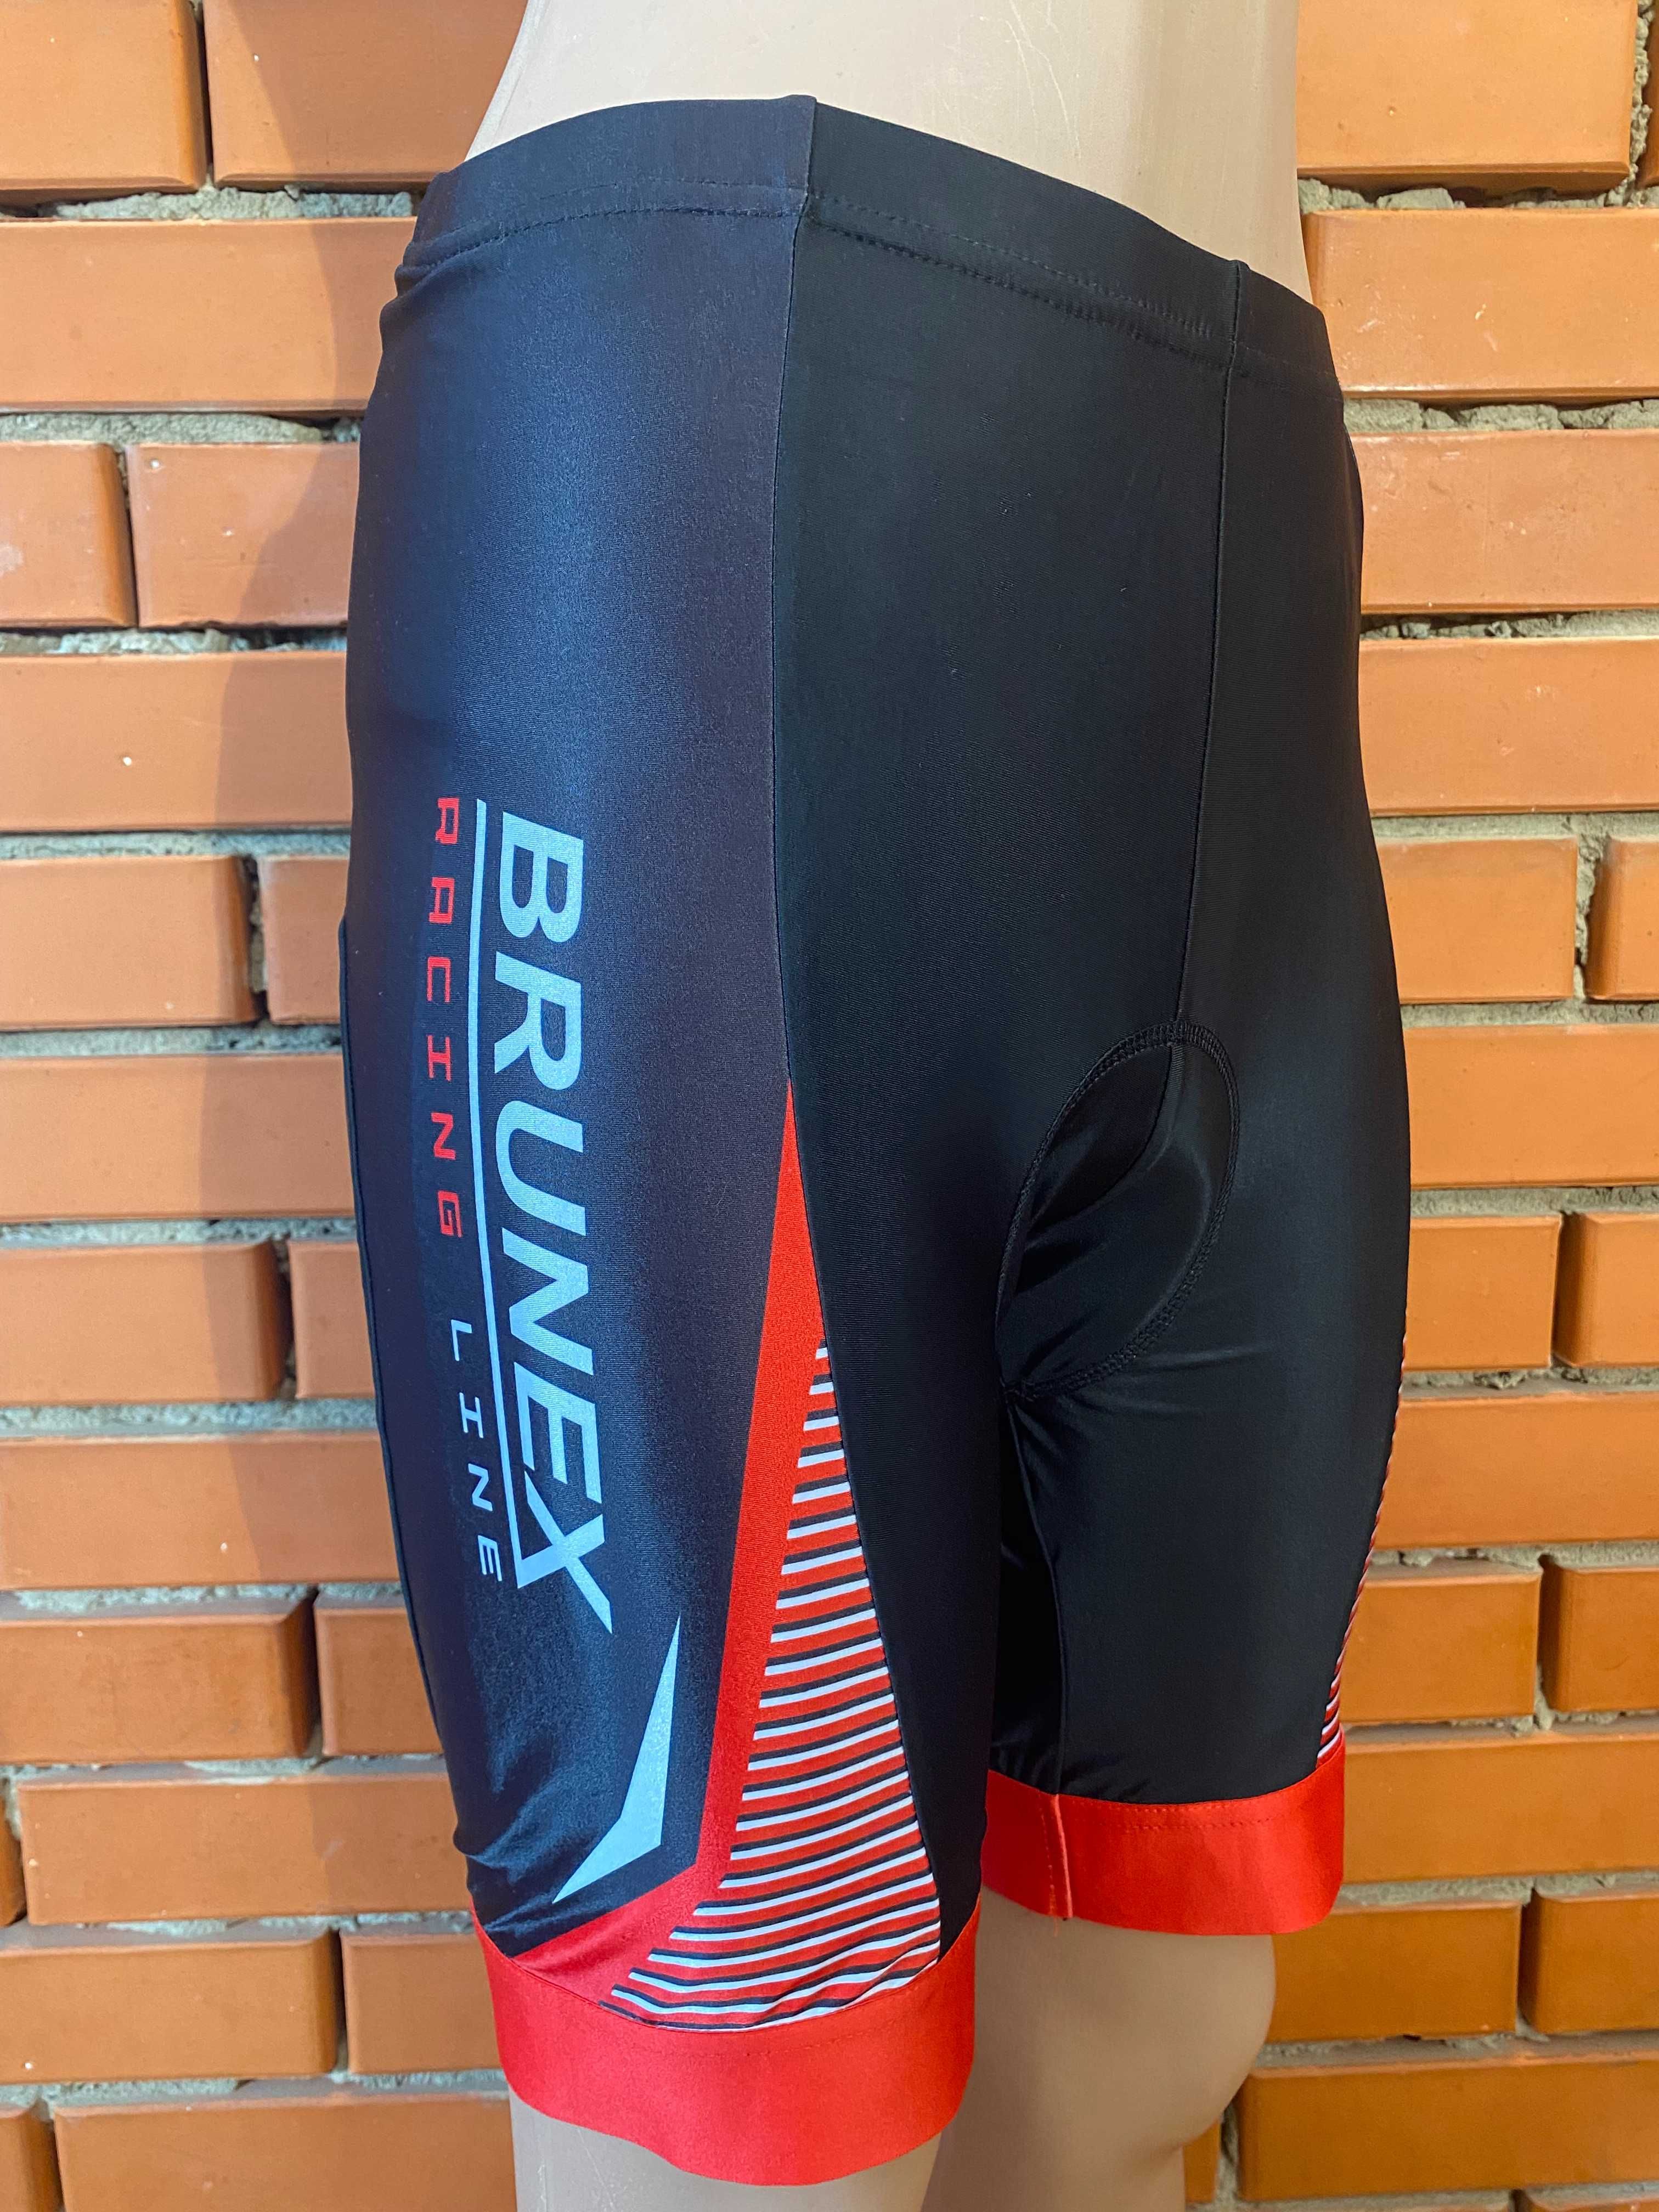 Літній велосипедний костюм ( з памперсом) brunex 46 р